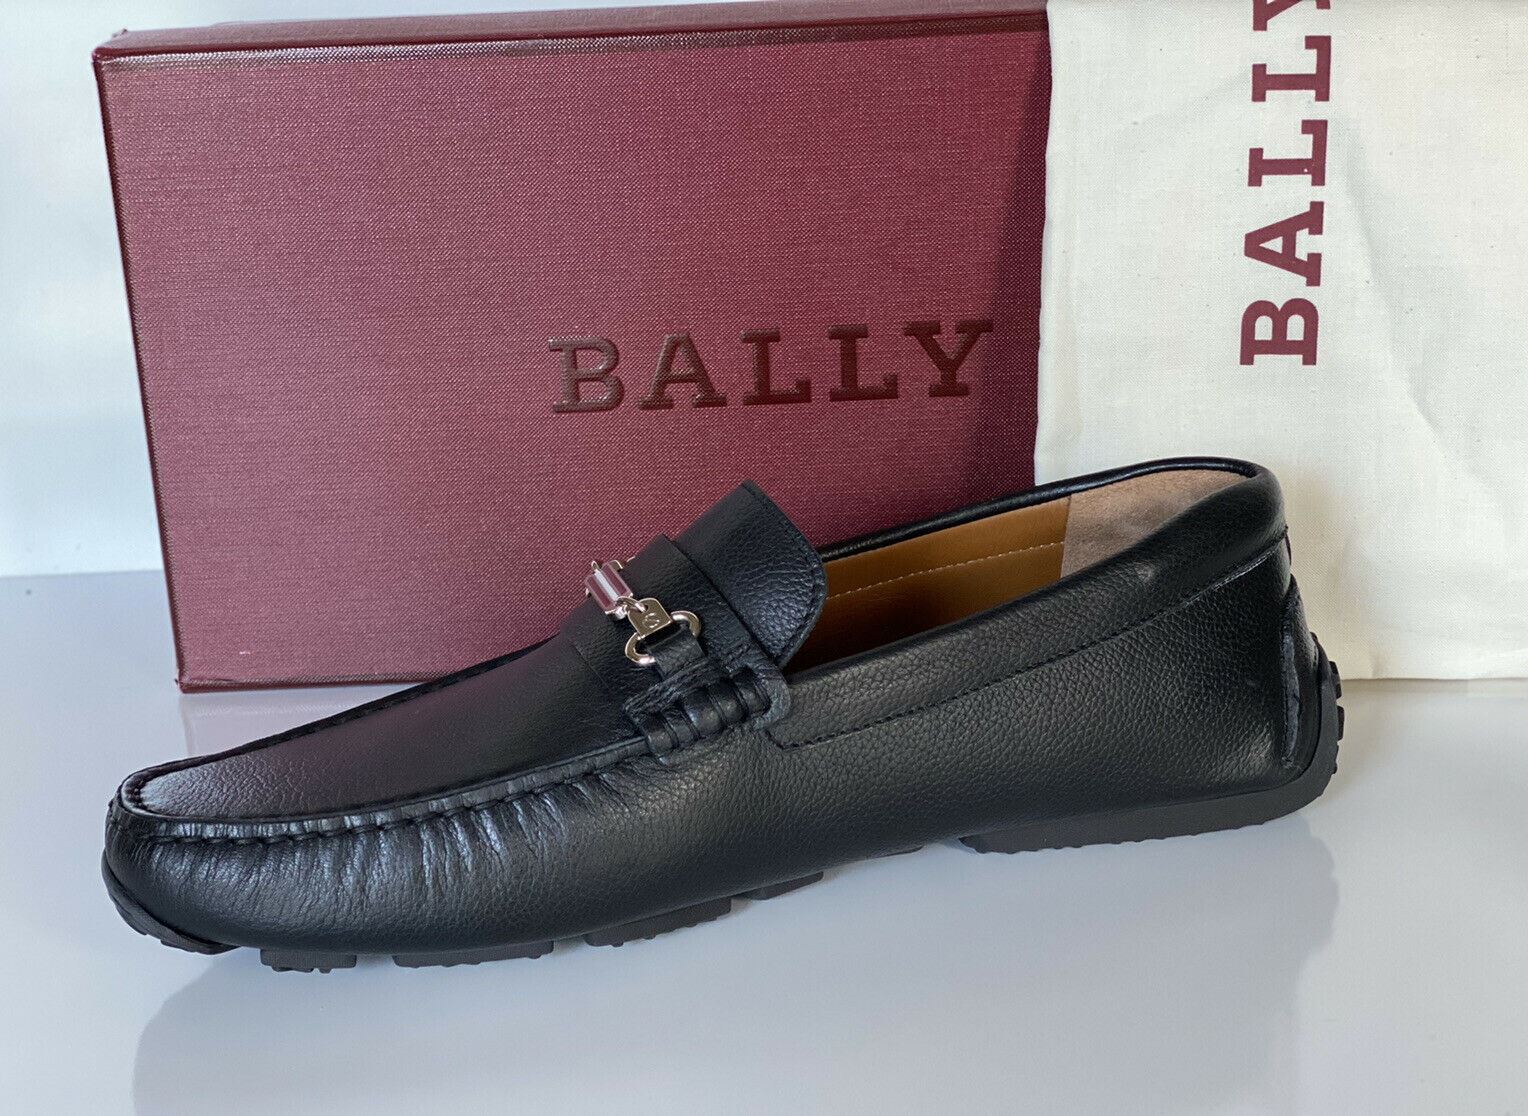 NIB Мужские туфли из бычьей кожи Bally Pitaval за 510 долларов США, черные 10 D США 6227955 IT 